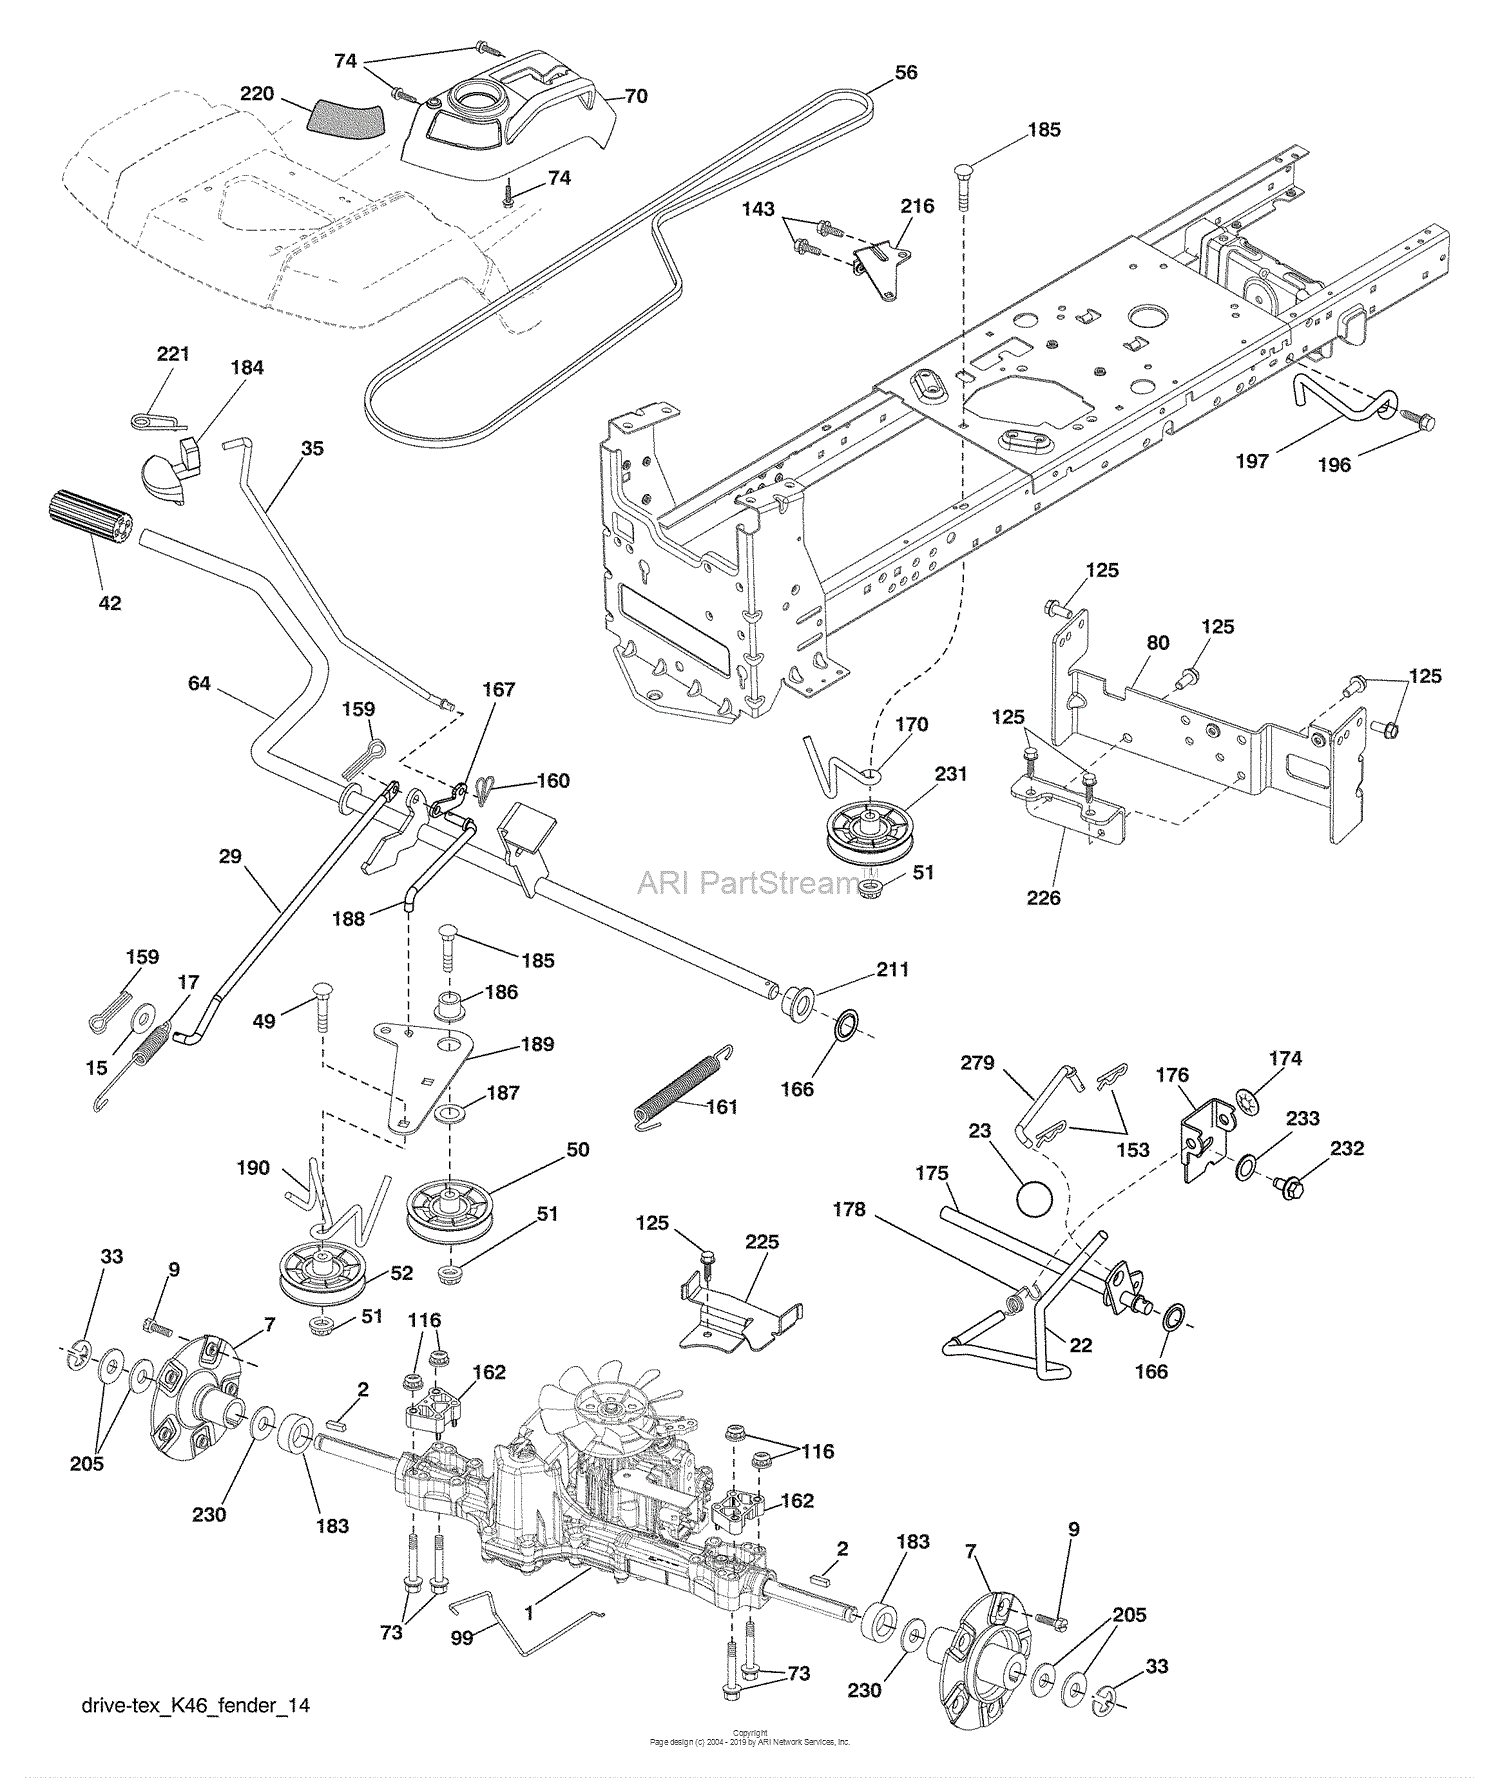 Husqvarna LGT 2554 (96043009400) (200910) Parts Diagram for Drive